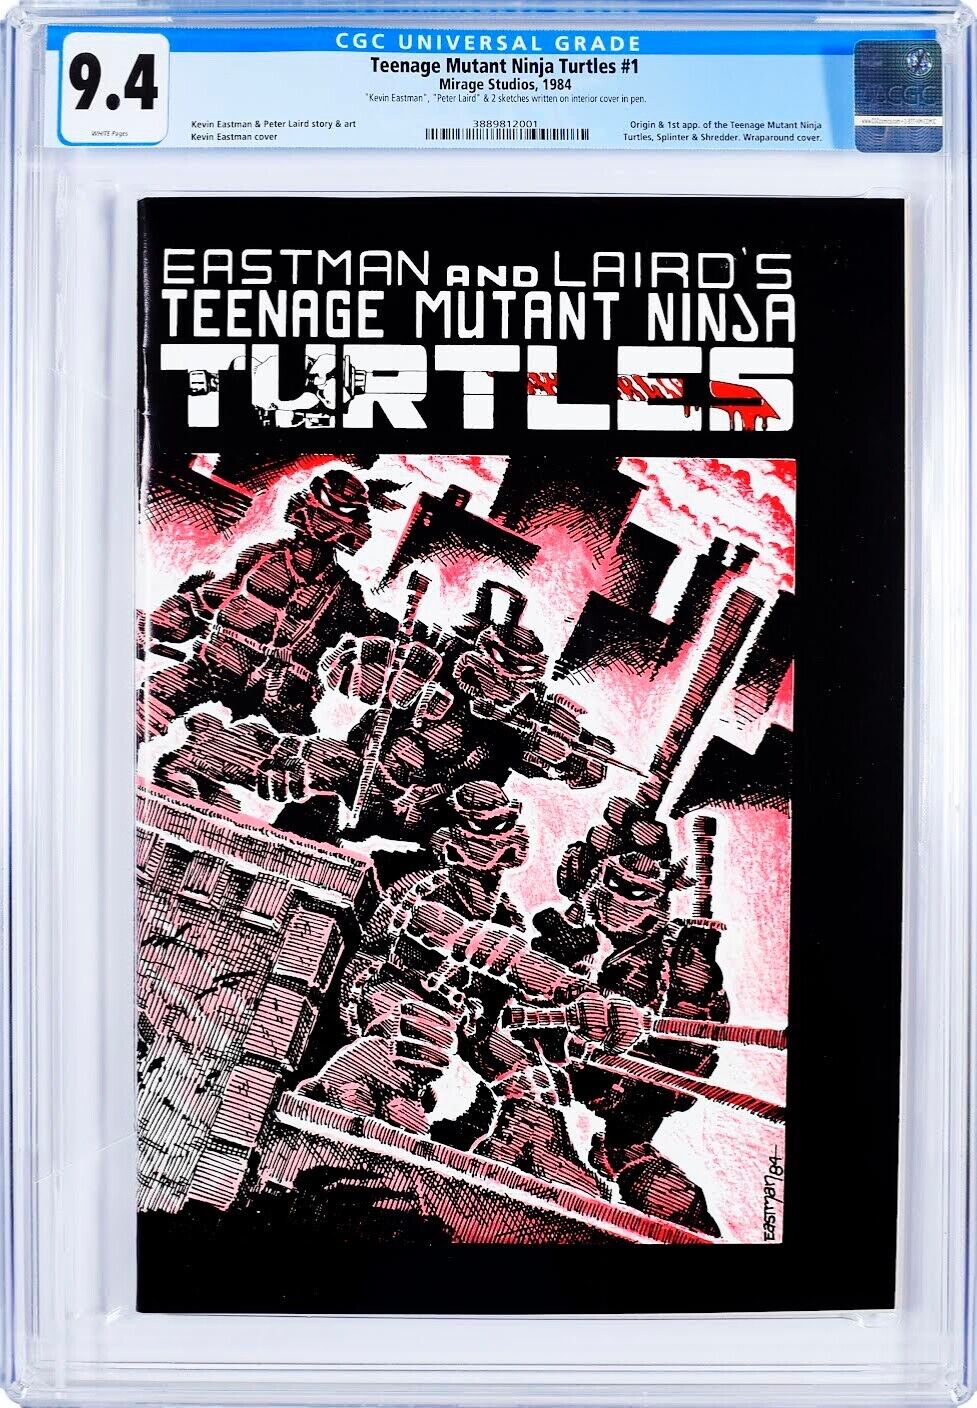 Teenage Mutant Ninja Turtles #1 TMNT 1st Print 1984 CGC 9.4 Both authors signed